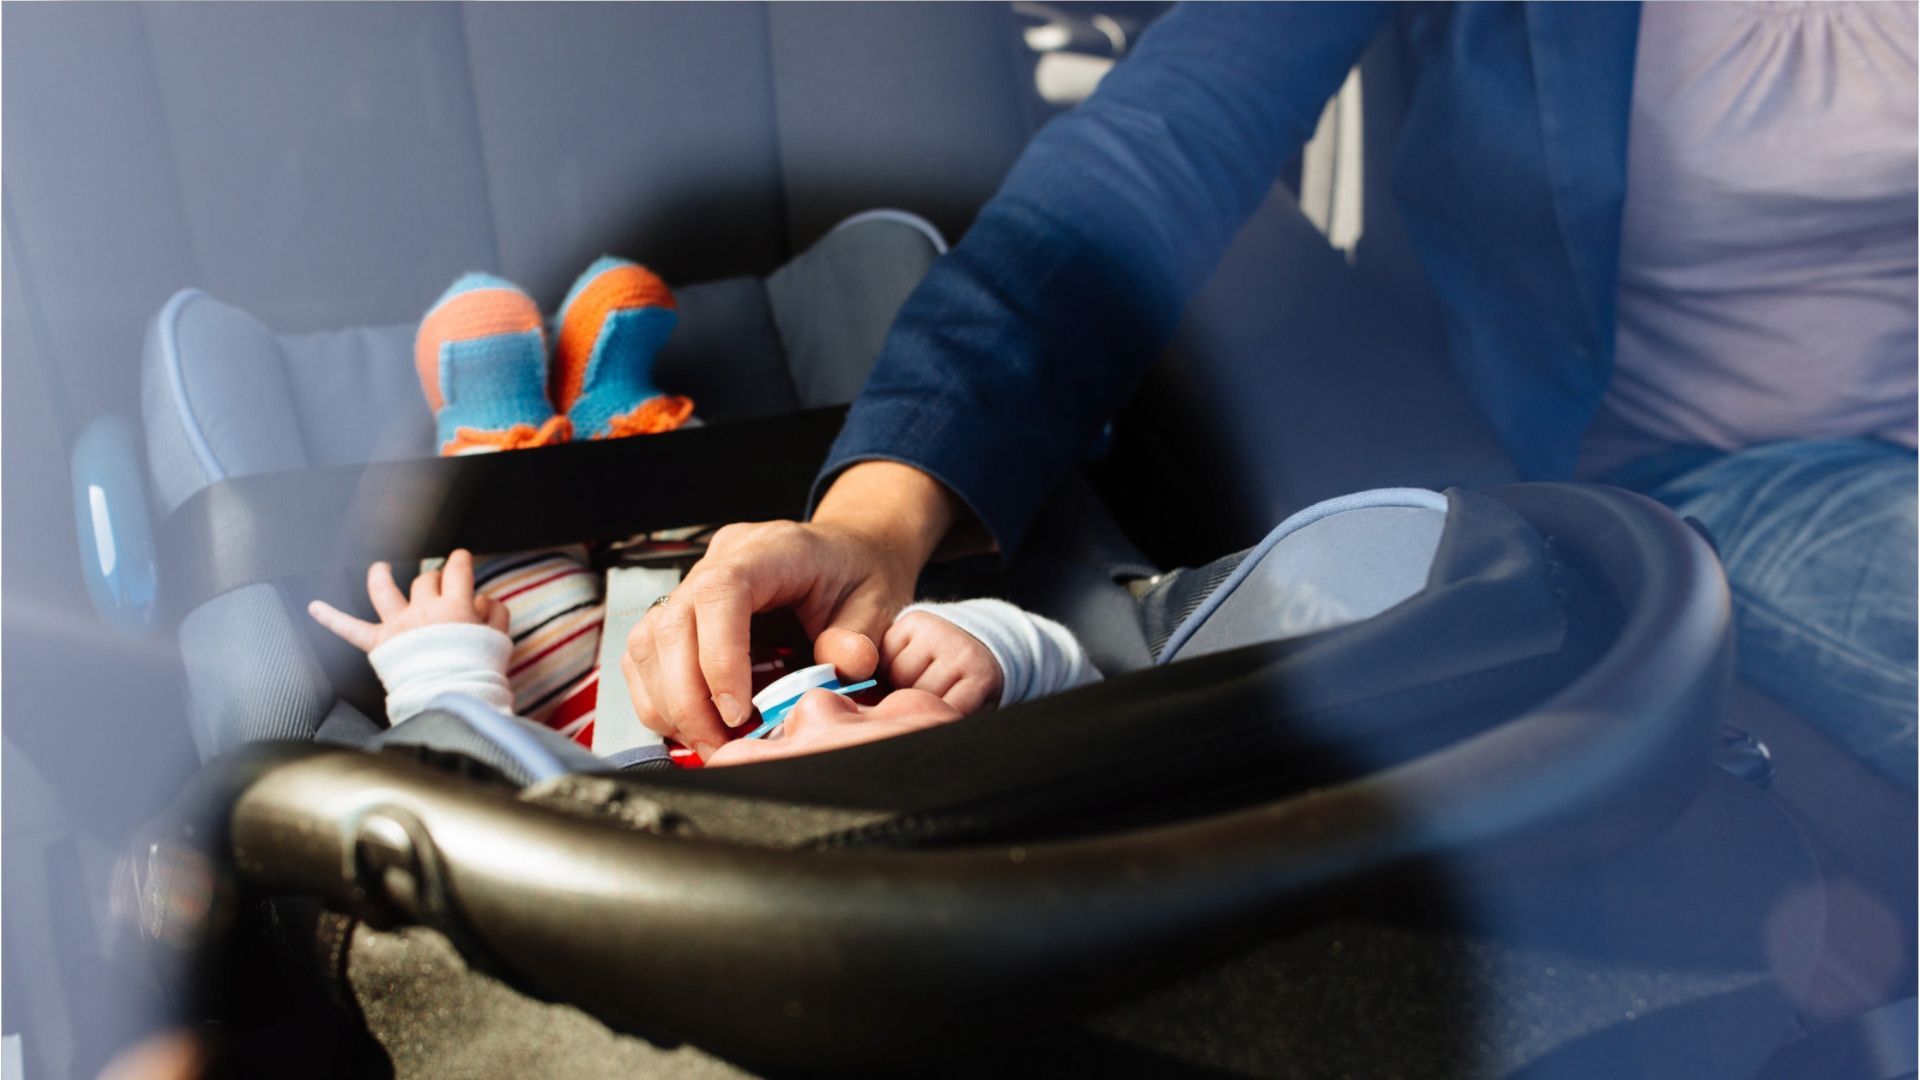 Eltern unterwegs: Das gilt für Kinder auf dem Beifahrersitz